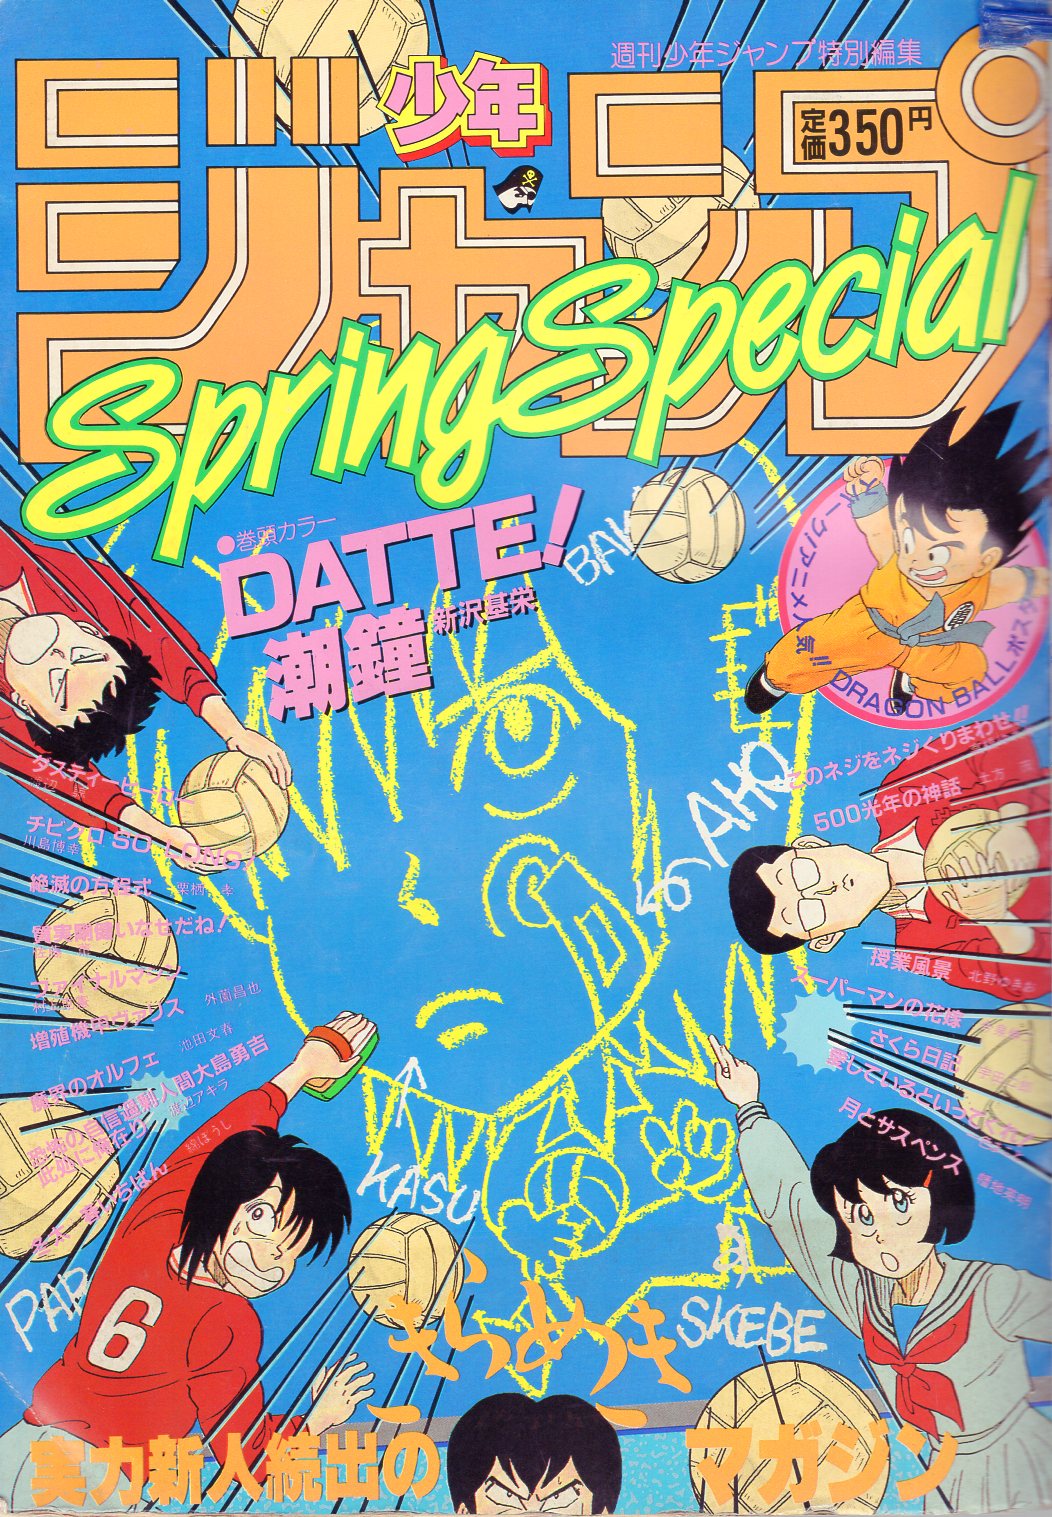 1989年発行 集英社 聖闘士星矢アニメスペシャル3完結編